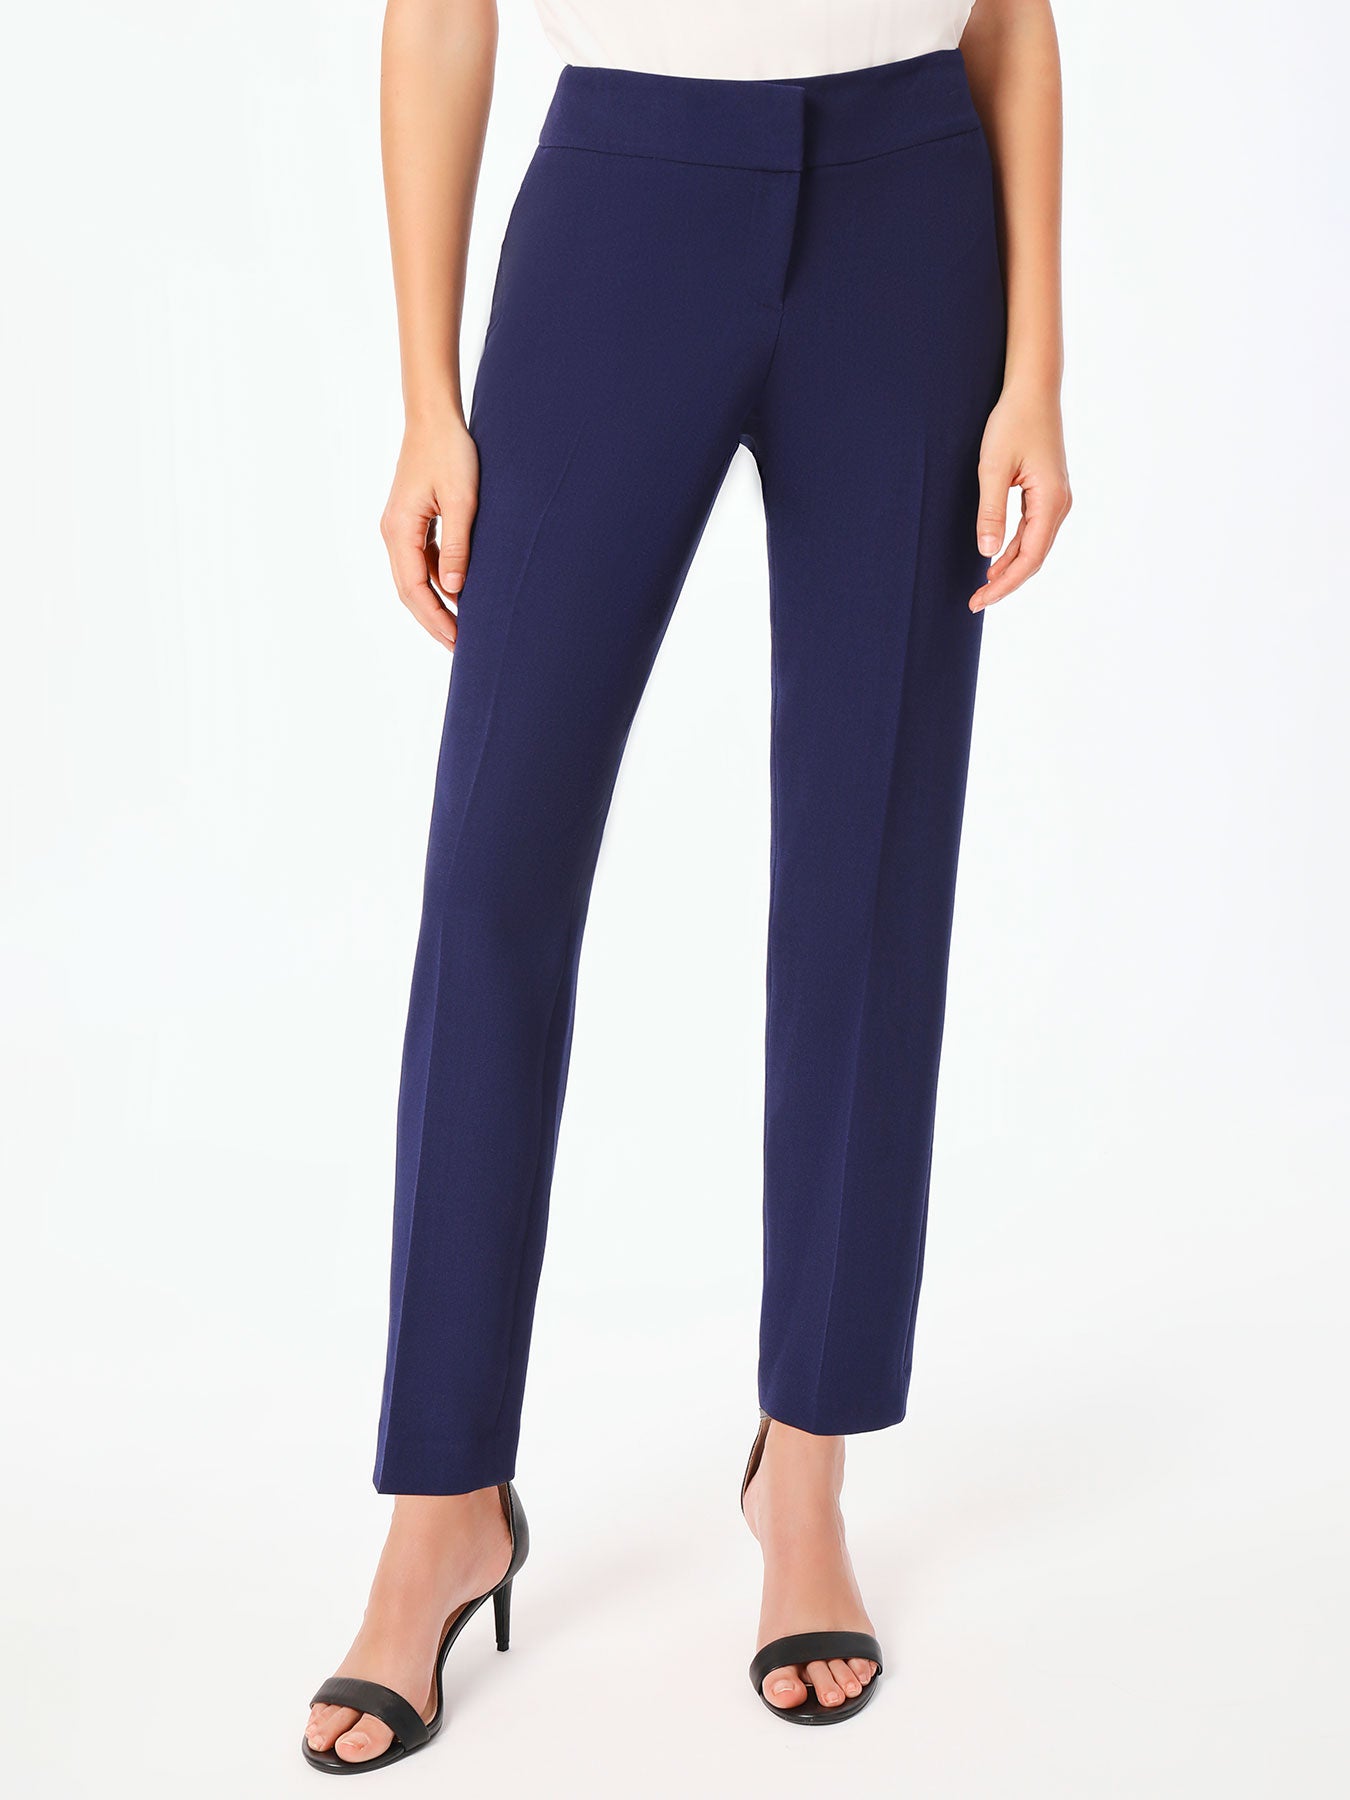 Women's Knit Pants - Business Casual Pants